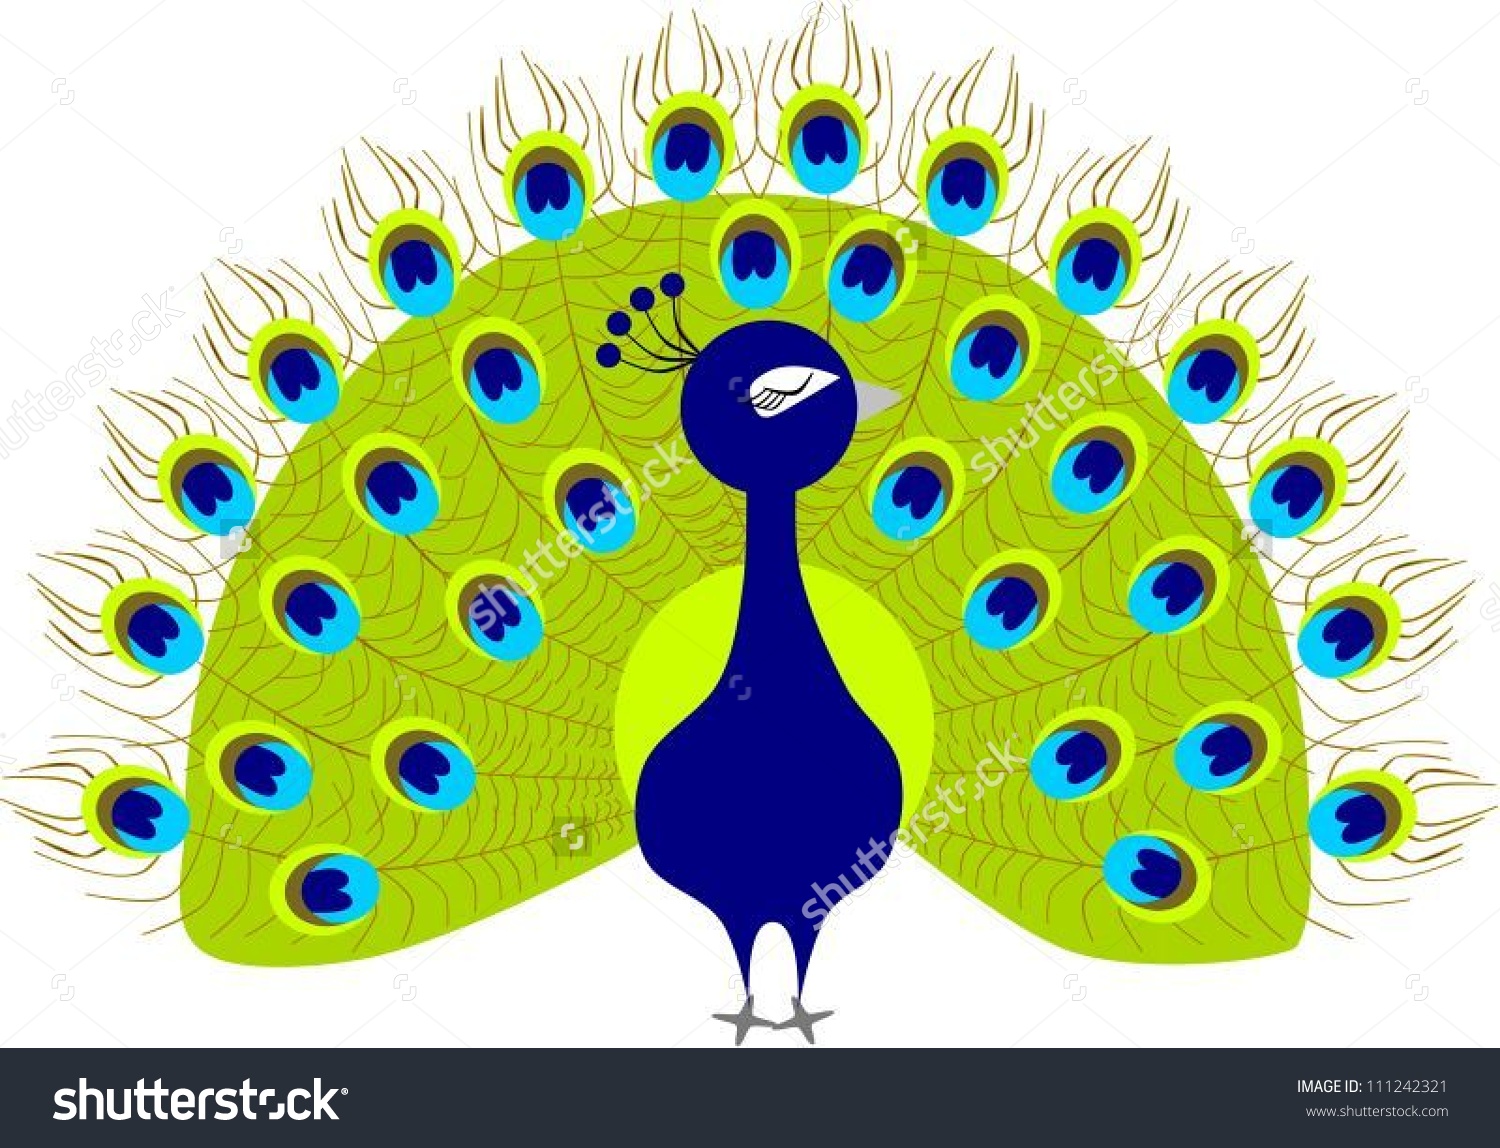 Peacock clipart - Clipart Peacock